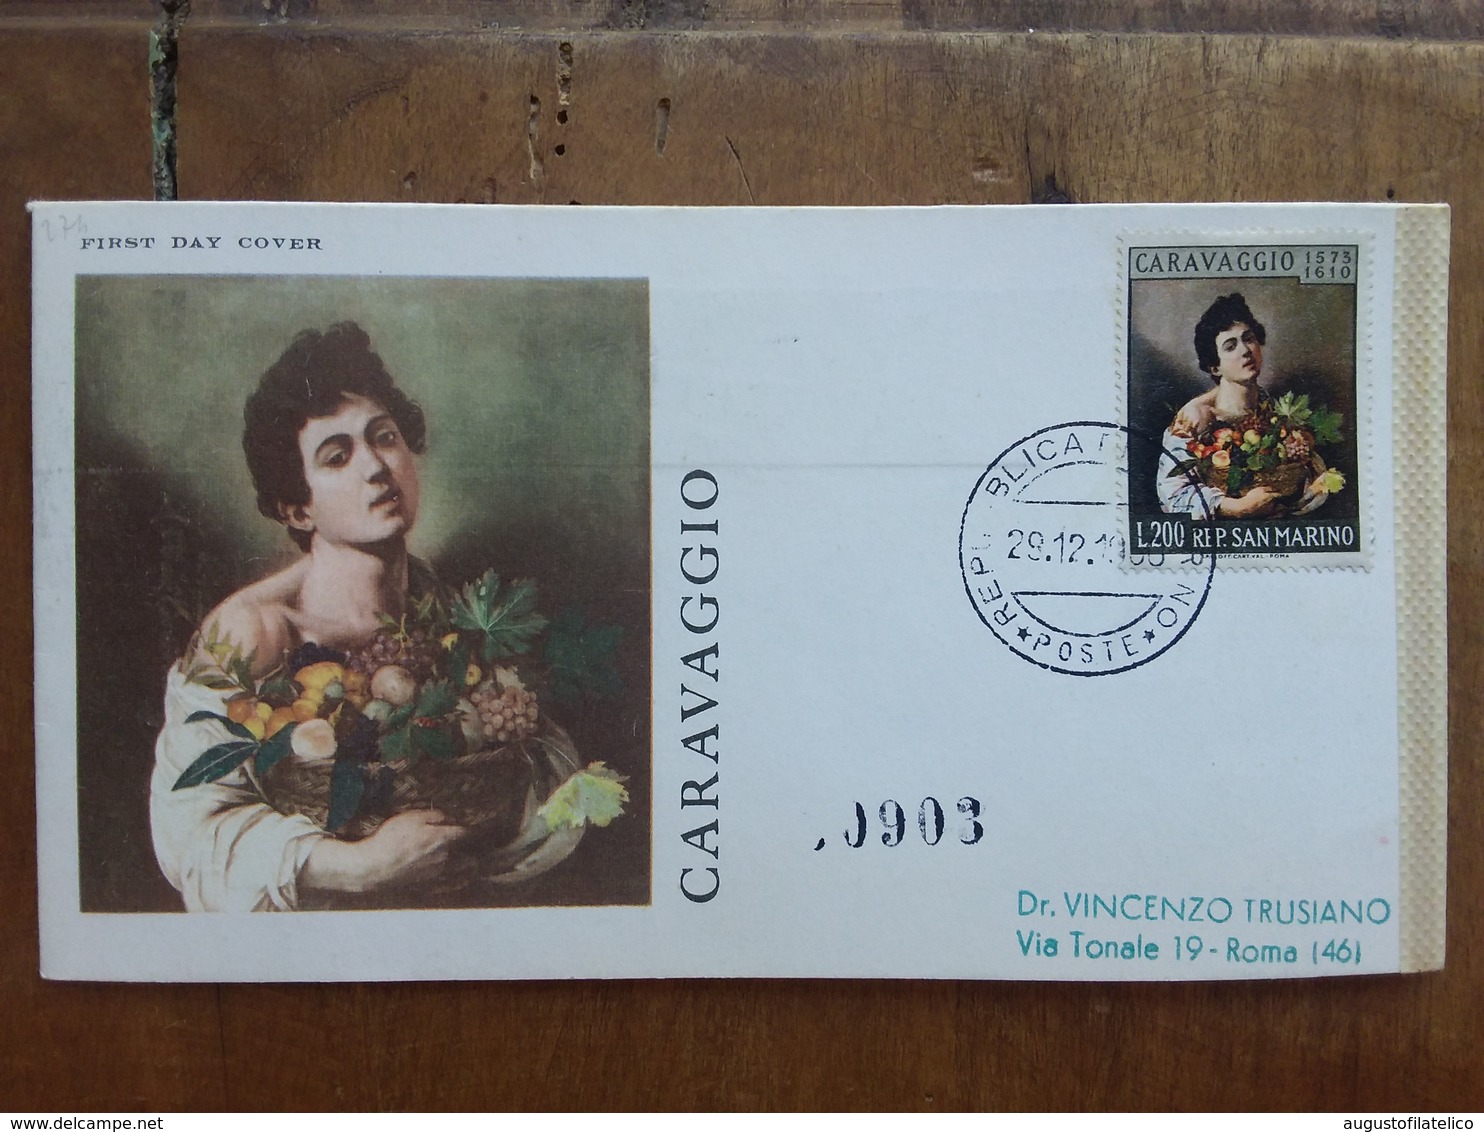 SAN MARINO - Caravaggio 1960 - Viaggiata Con Annullo Arrivo + Spese Postali - FDC